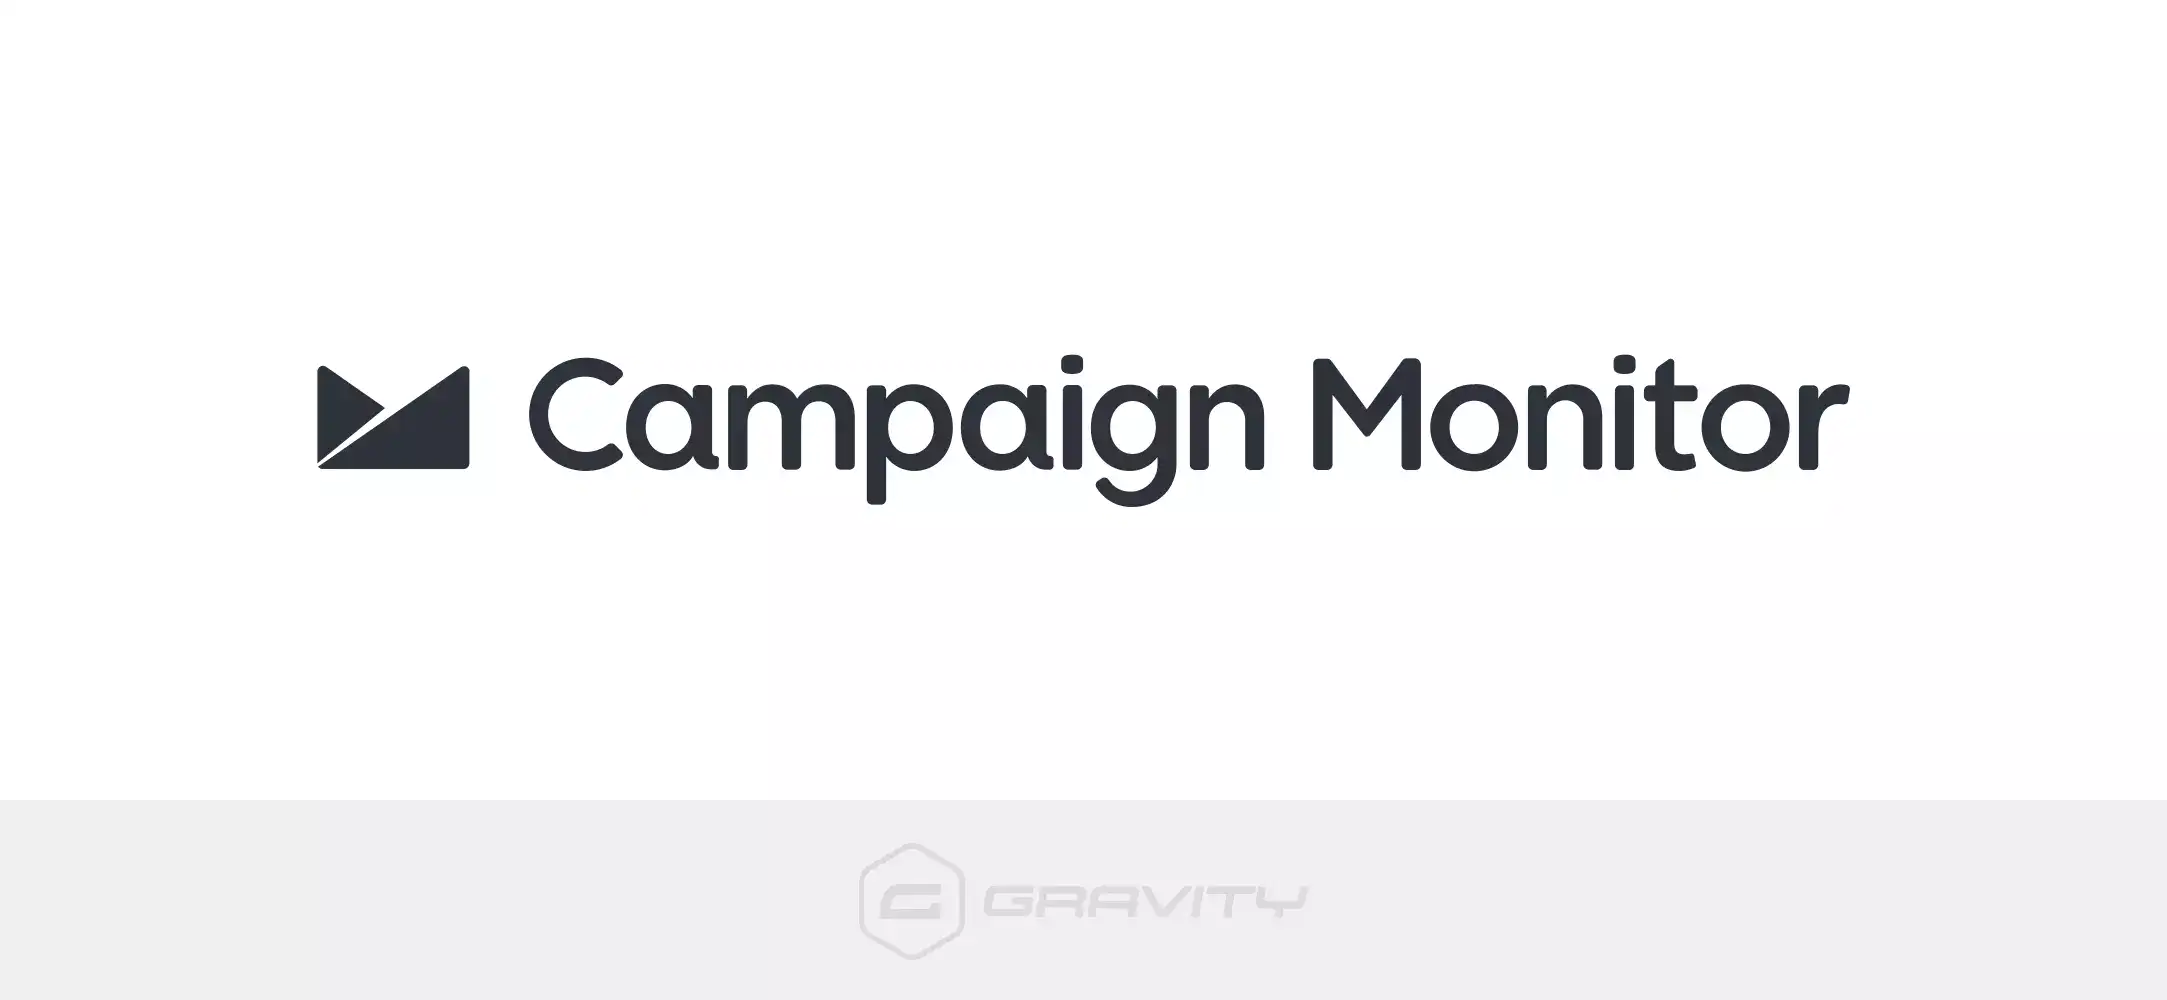 ادآن Campaign Monitor برای گرویتی فرمز